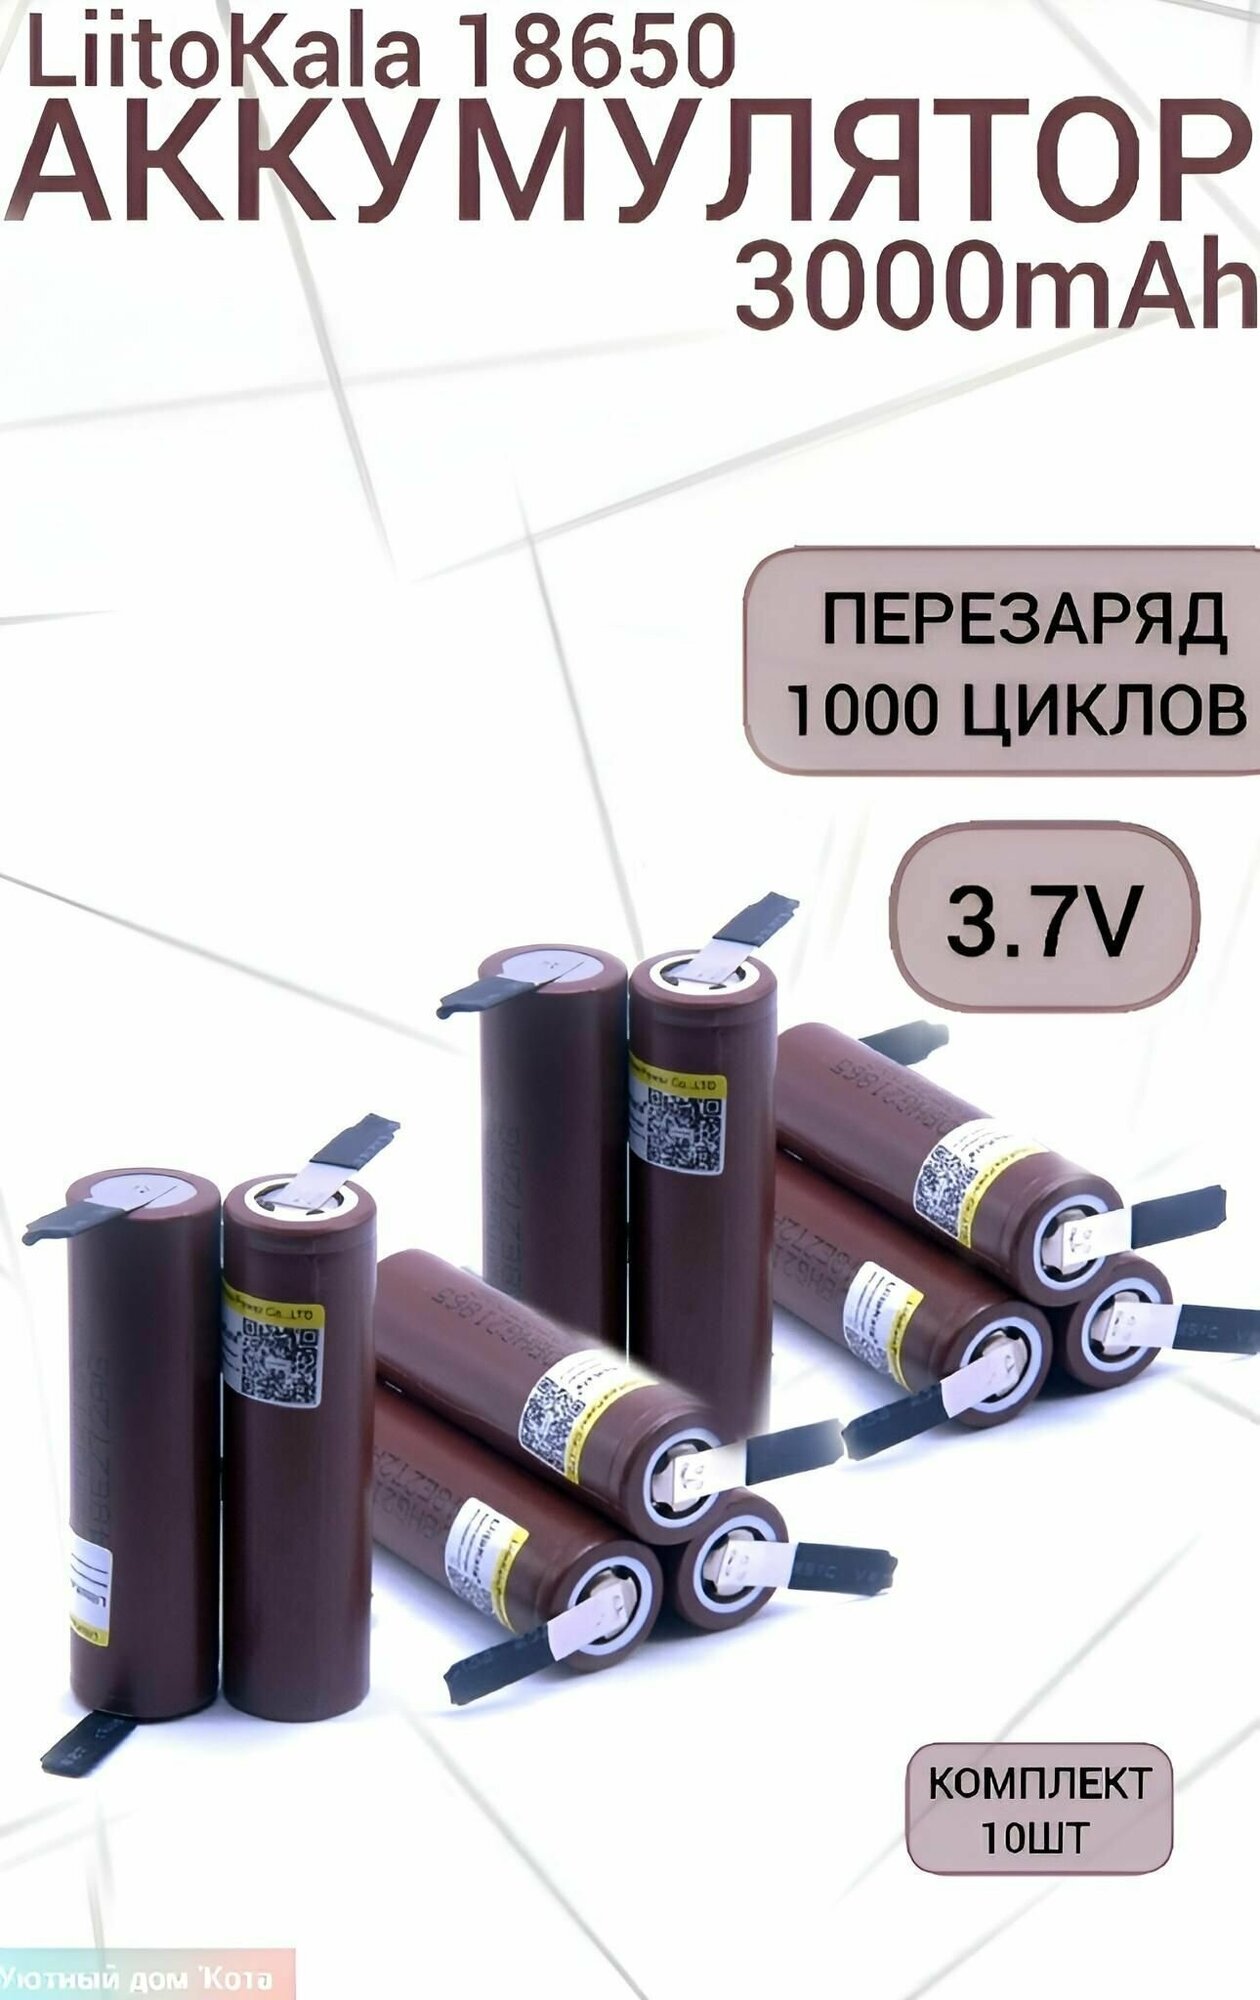 Аккумулятор Li-Ion 3000mAh 3.7 В LiitoKala HG2 18650 высокотоковый незащищенный с выводами, в упаковке: 10 шт.